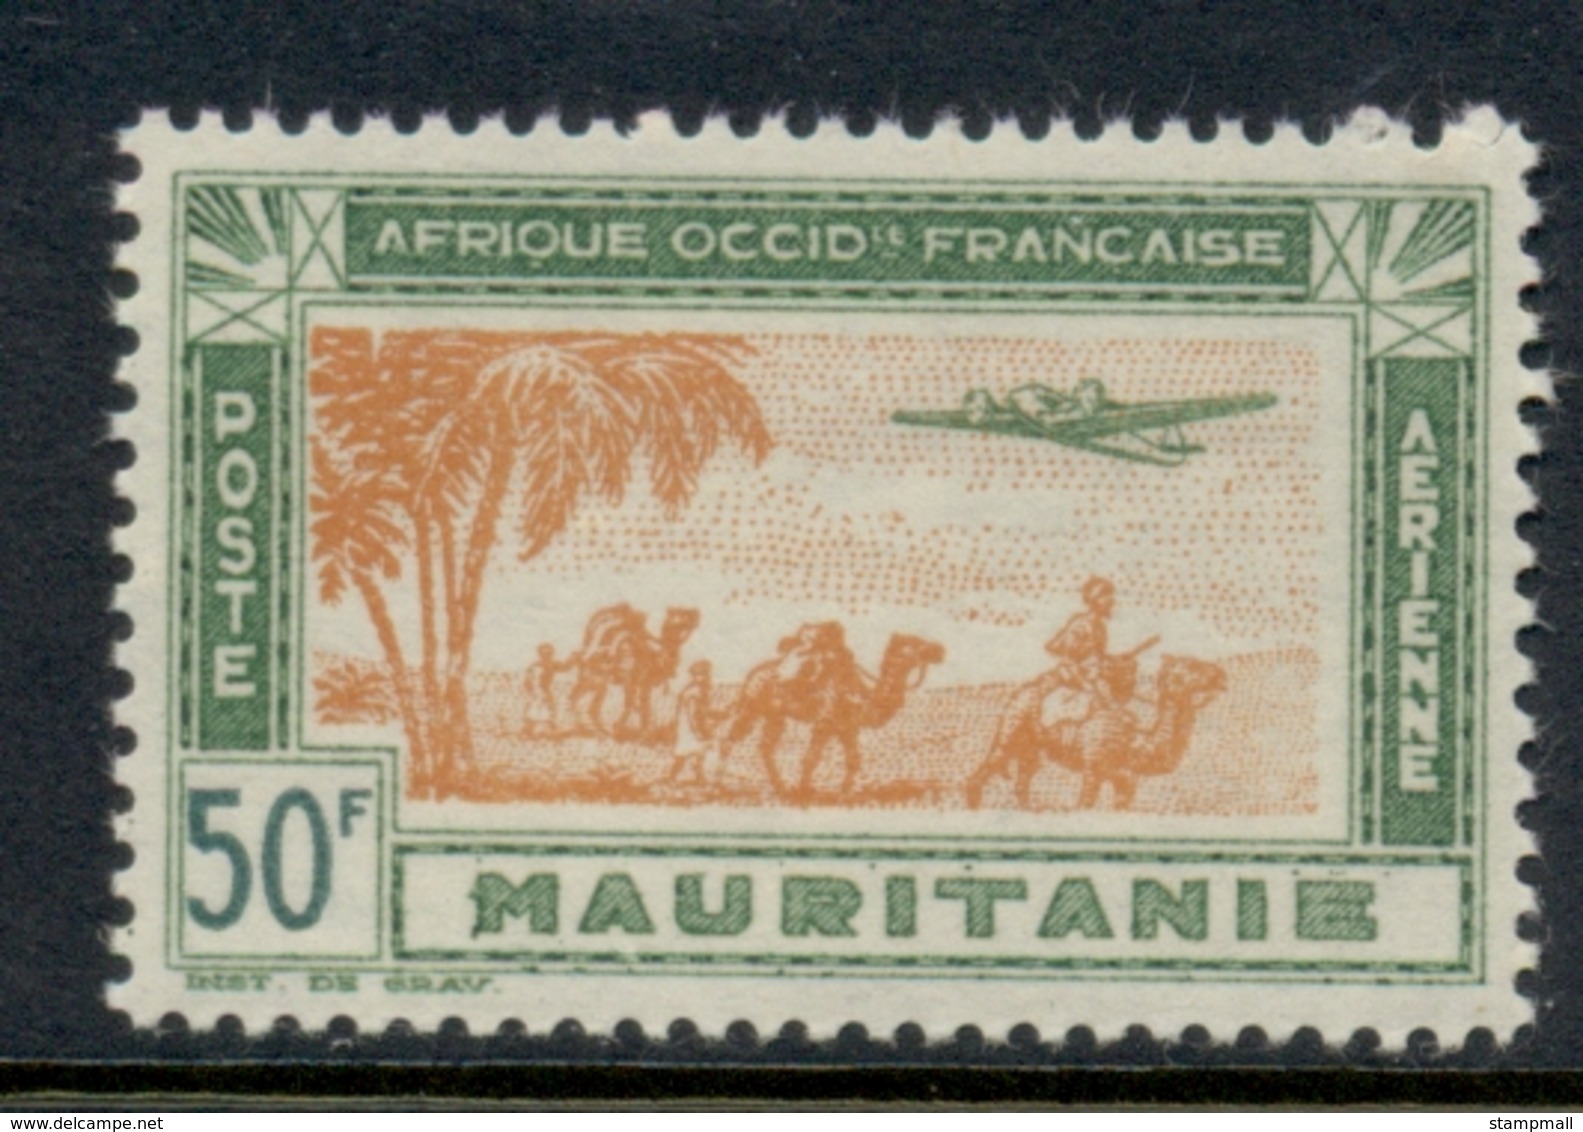 Mauritania 1942 Airmail 50f MUH - Unused Stamps